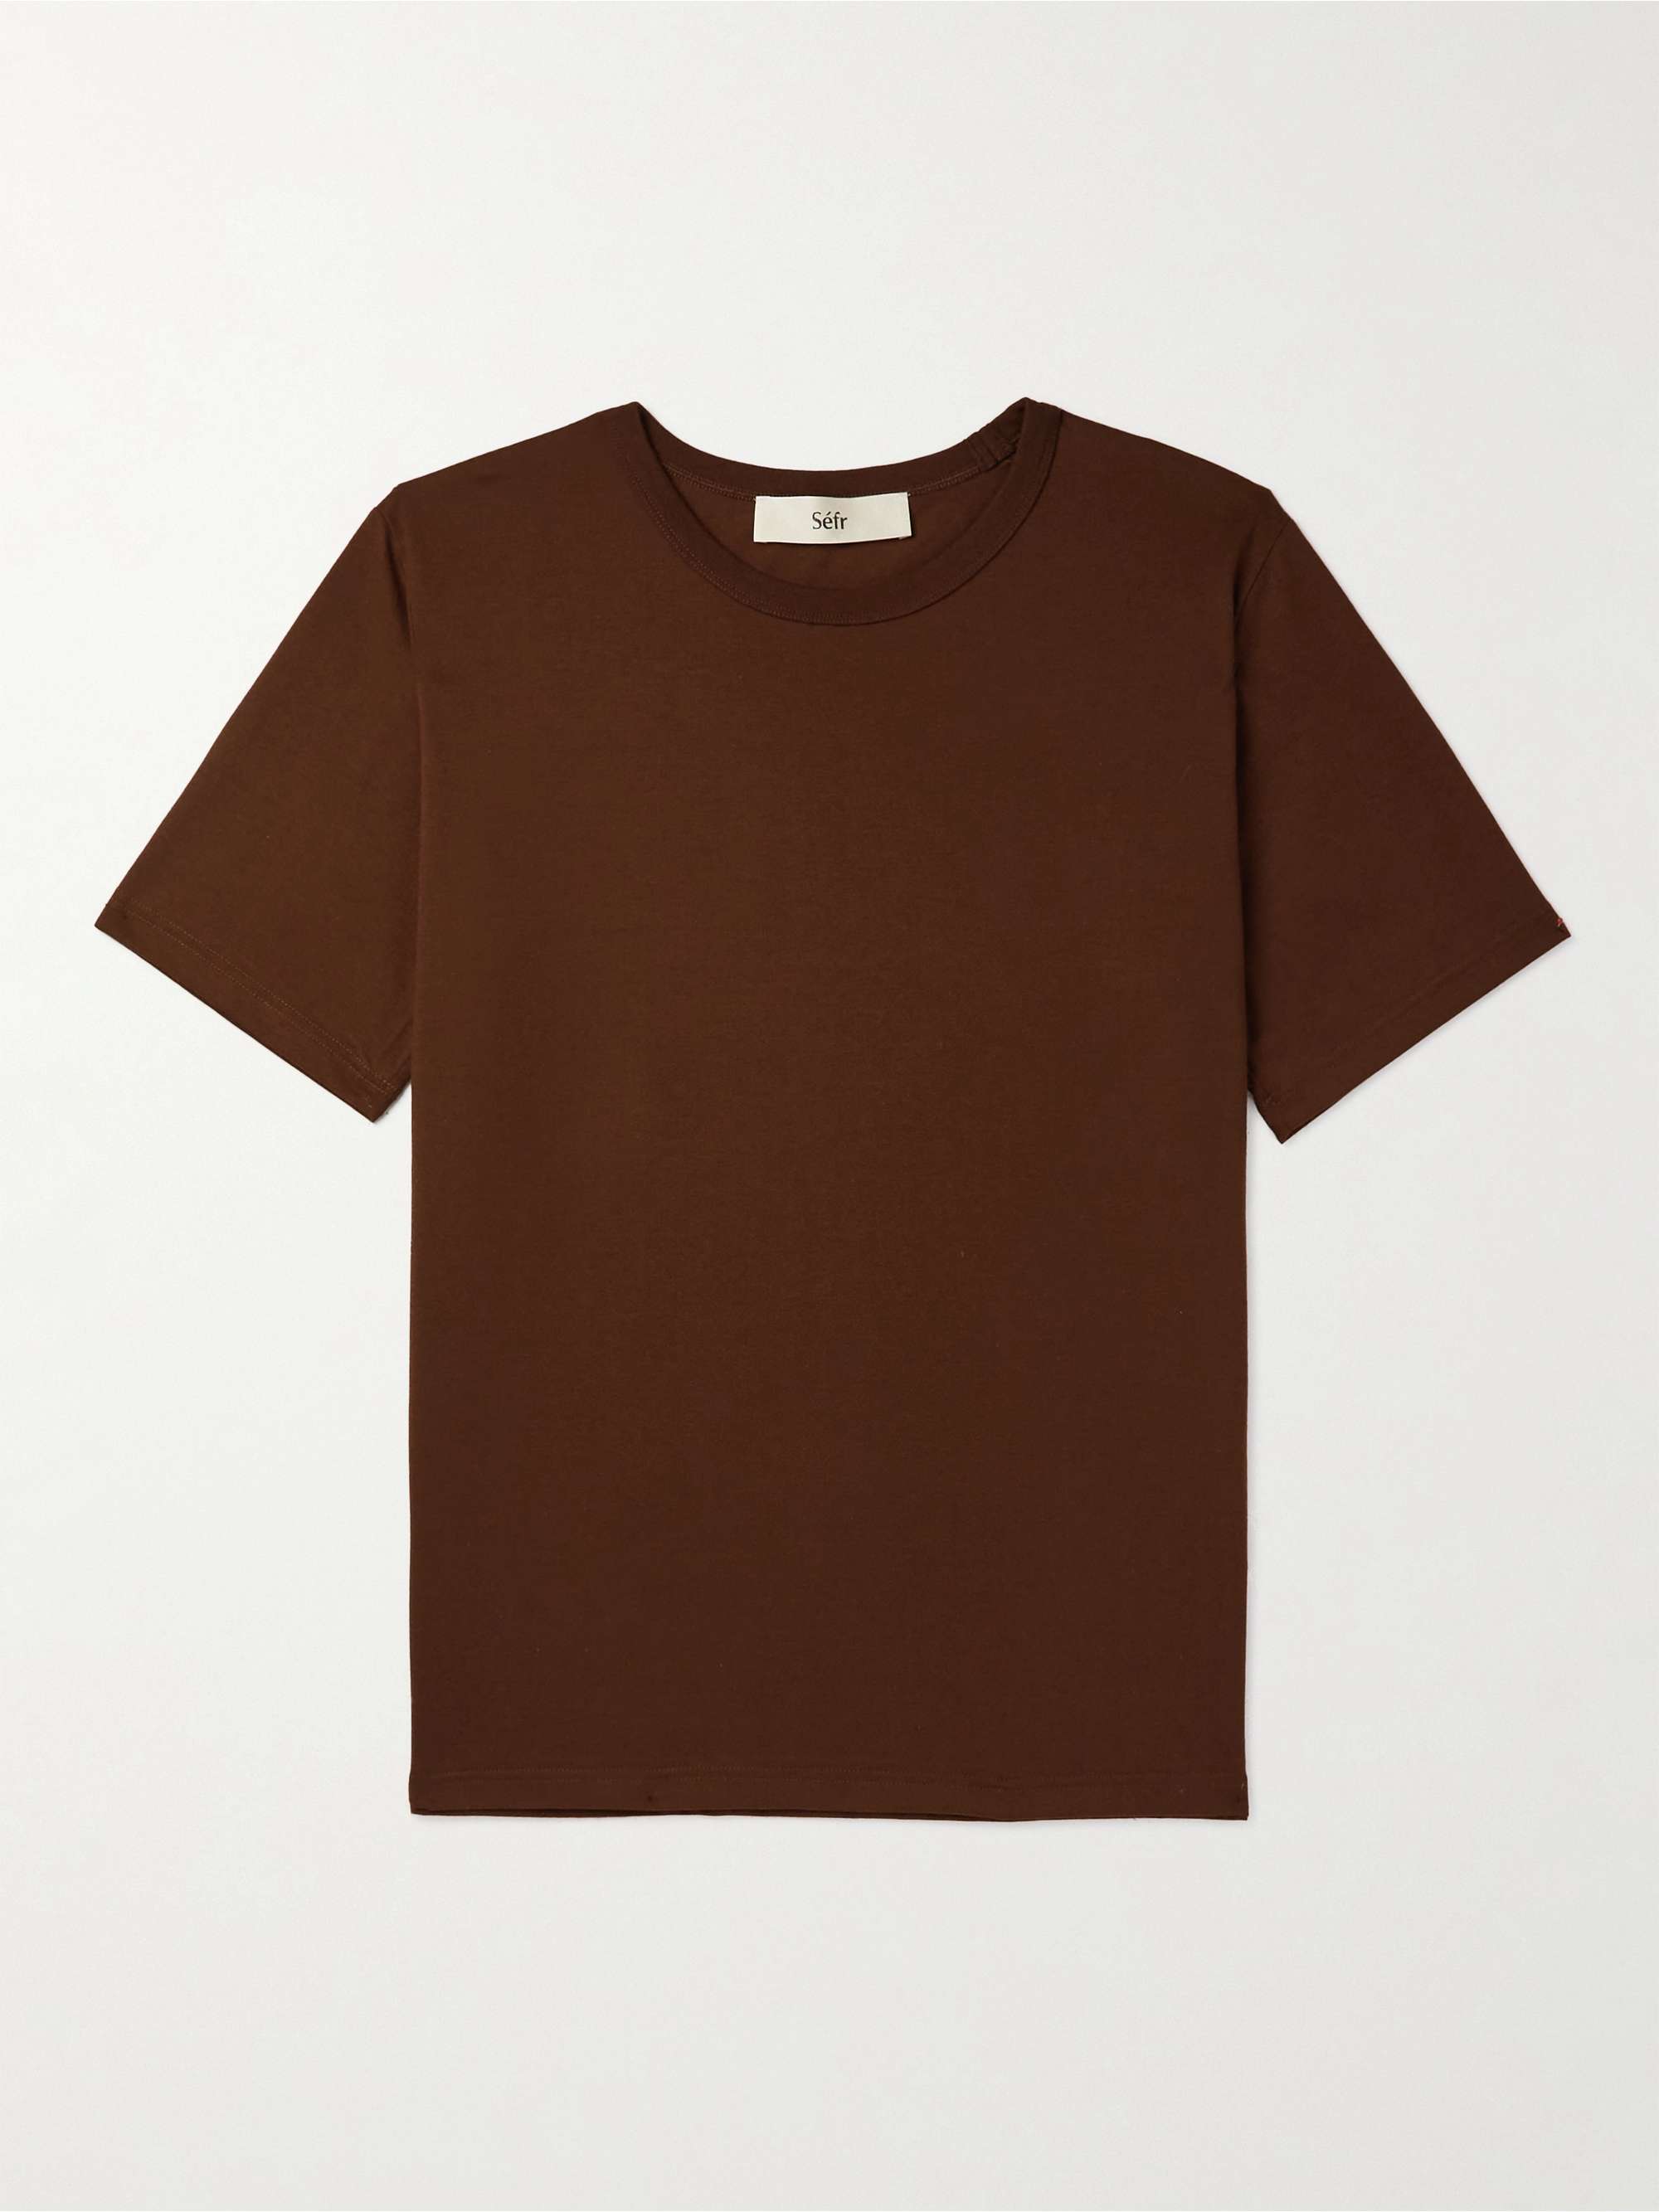 SÉFR Luca Cotton-Blend Jersey T-Shirt | MR PORTER